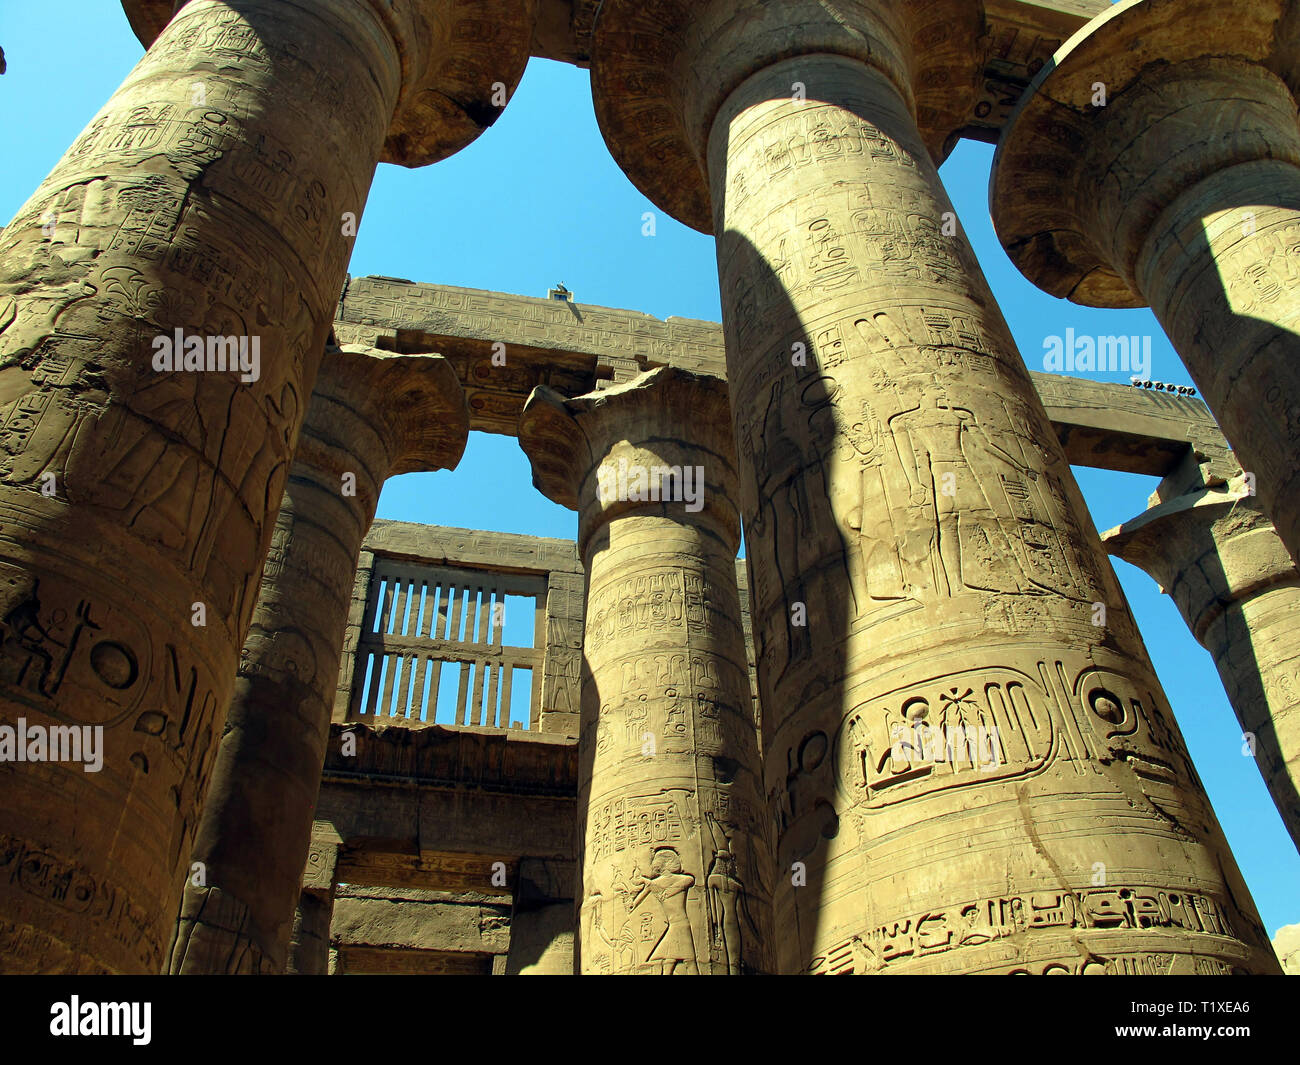 Ägypten, Luxor - 26.07.2010: Zentrale Kolonnade des Tempels von Karnak in Luxor. Historische Monumente der Antike. Sehenswürdigkeiten von Ägypten. Luxor. Stockfoto